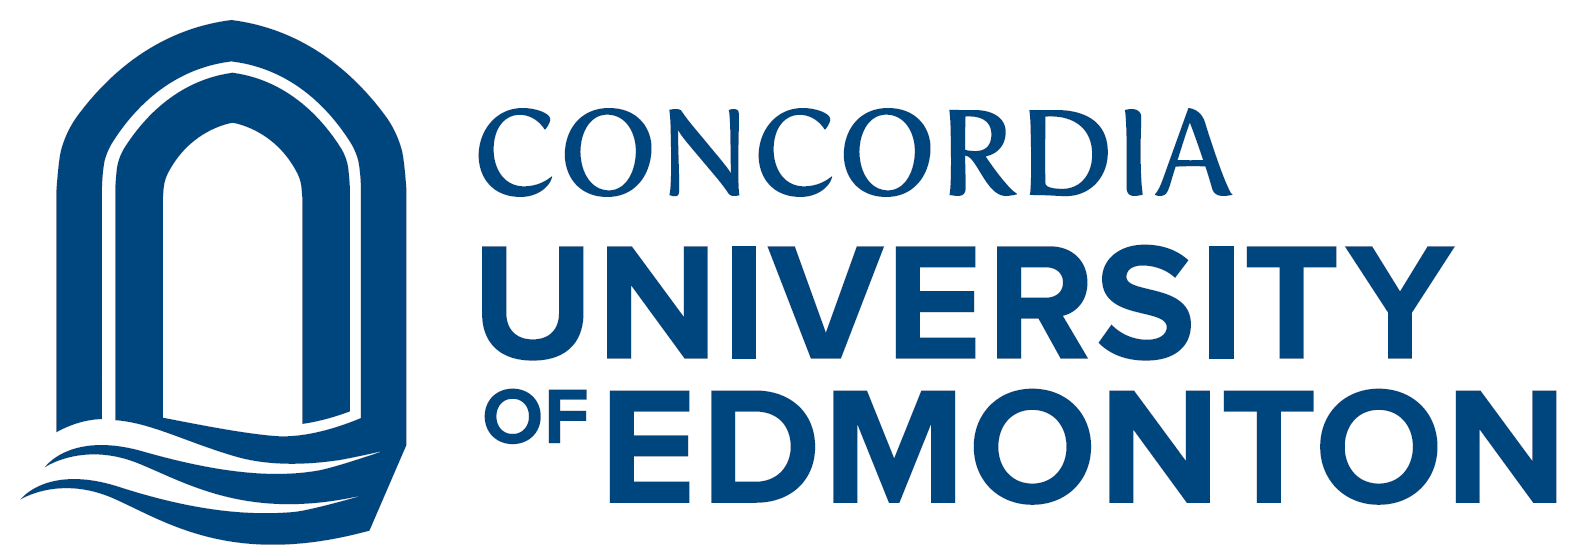 Bourses présidentielles Concordia Canada pour étudiants internationaux (entièrement financées)